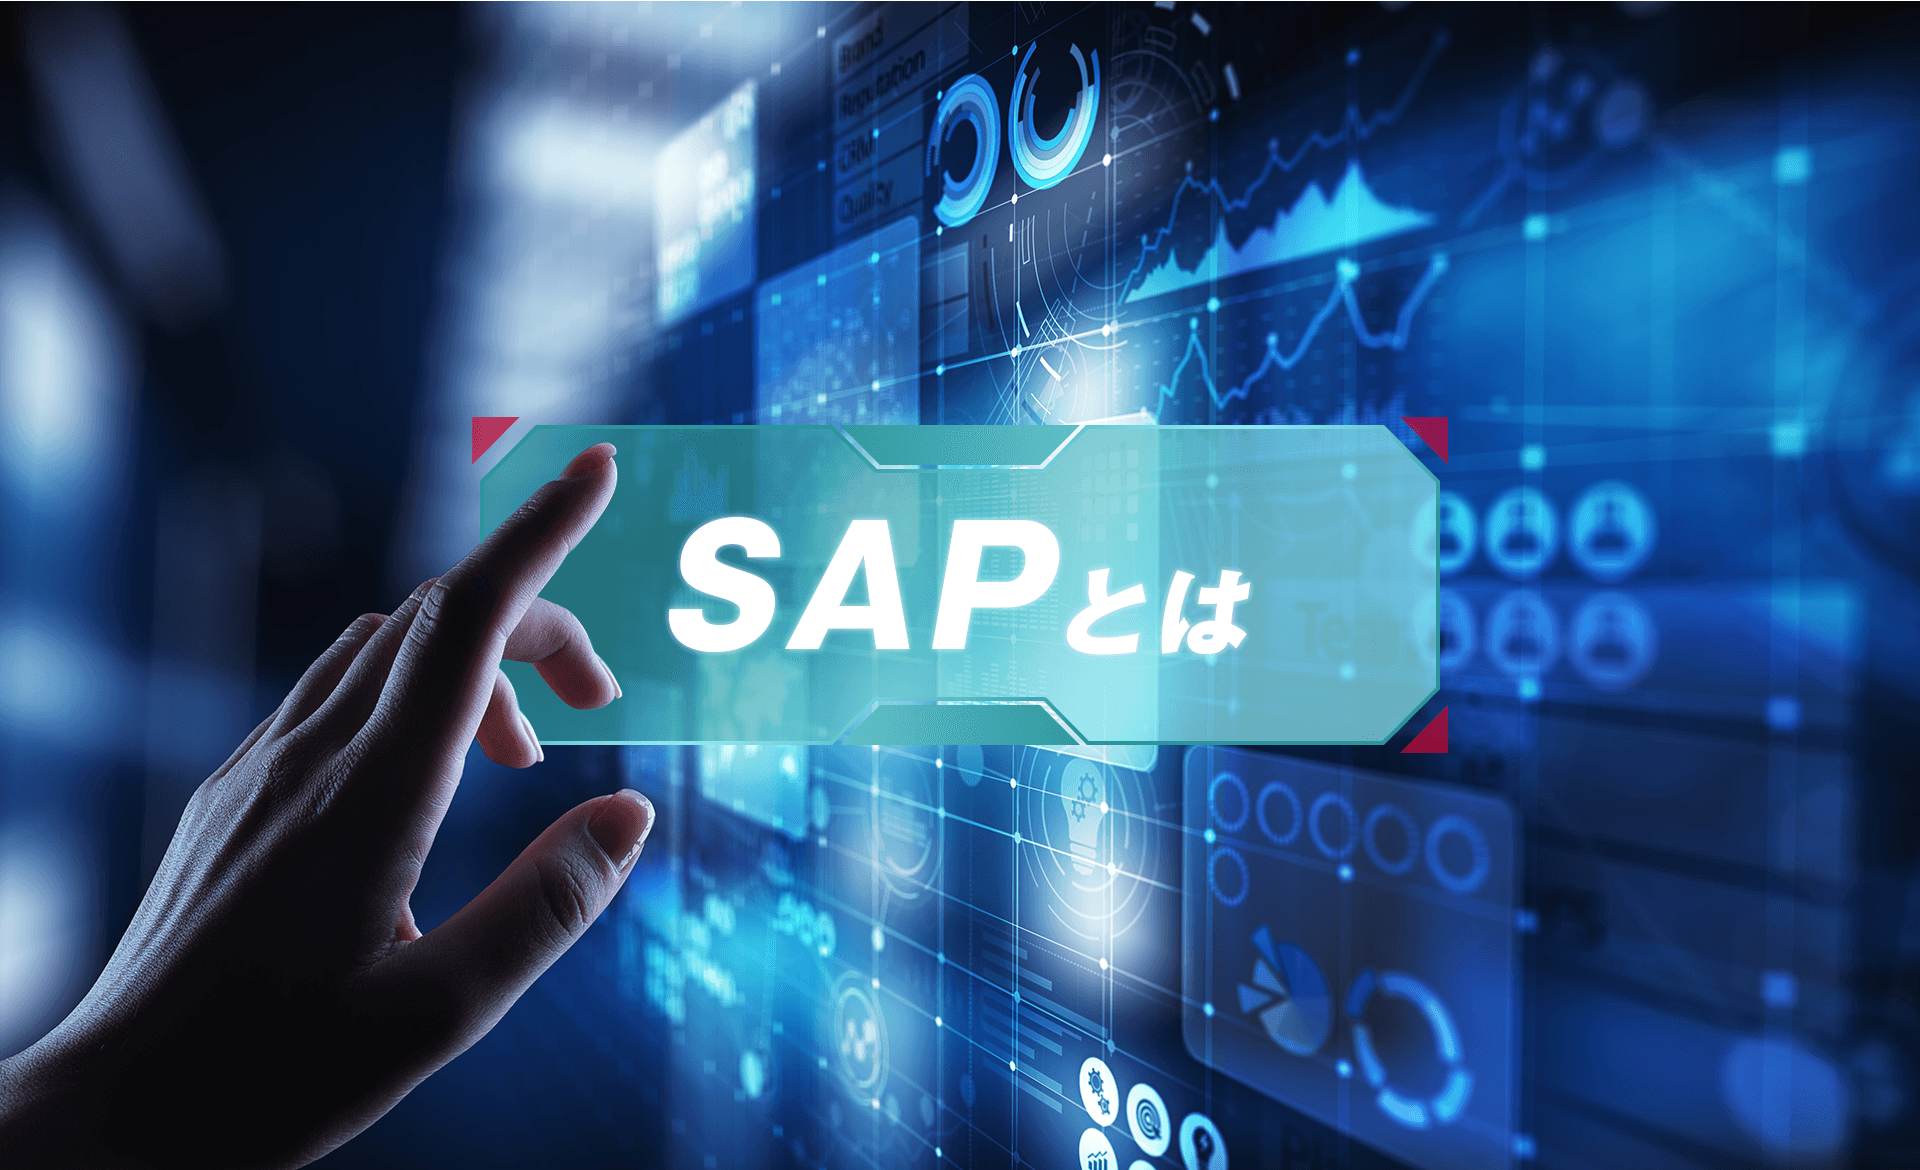 SAPとは？ERPシステムの機能やメリット・デメリット、課題について解説